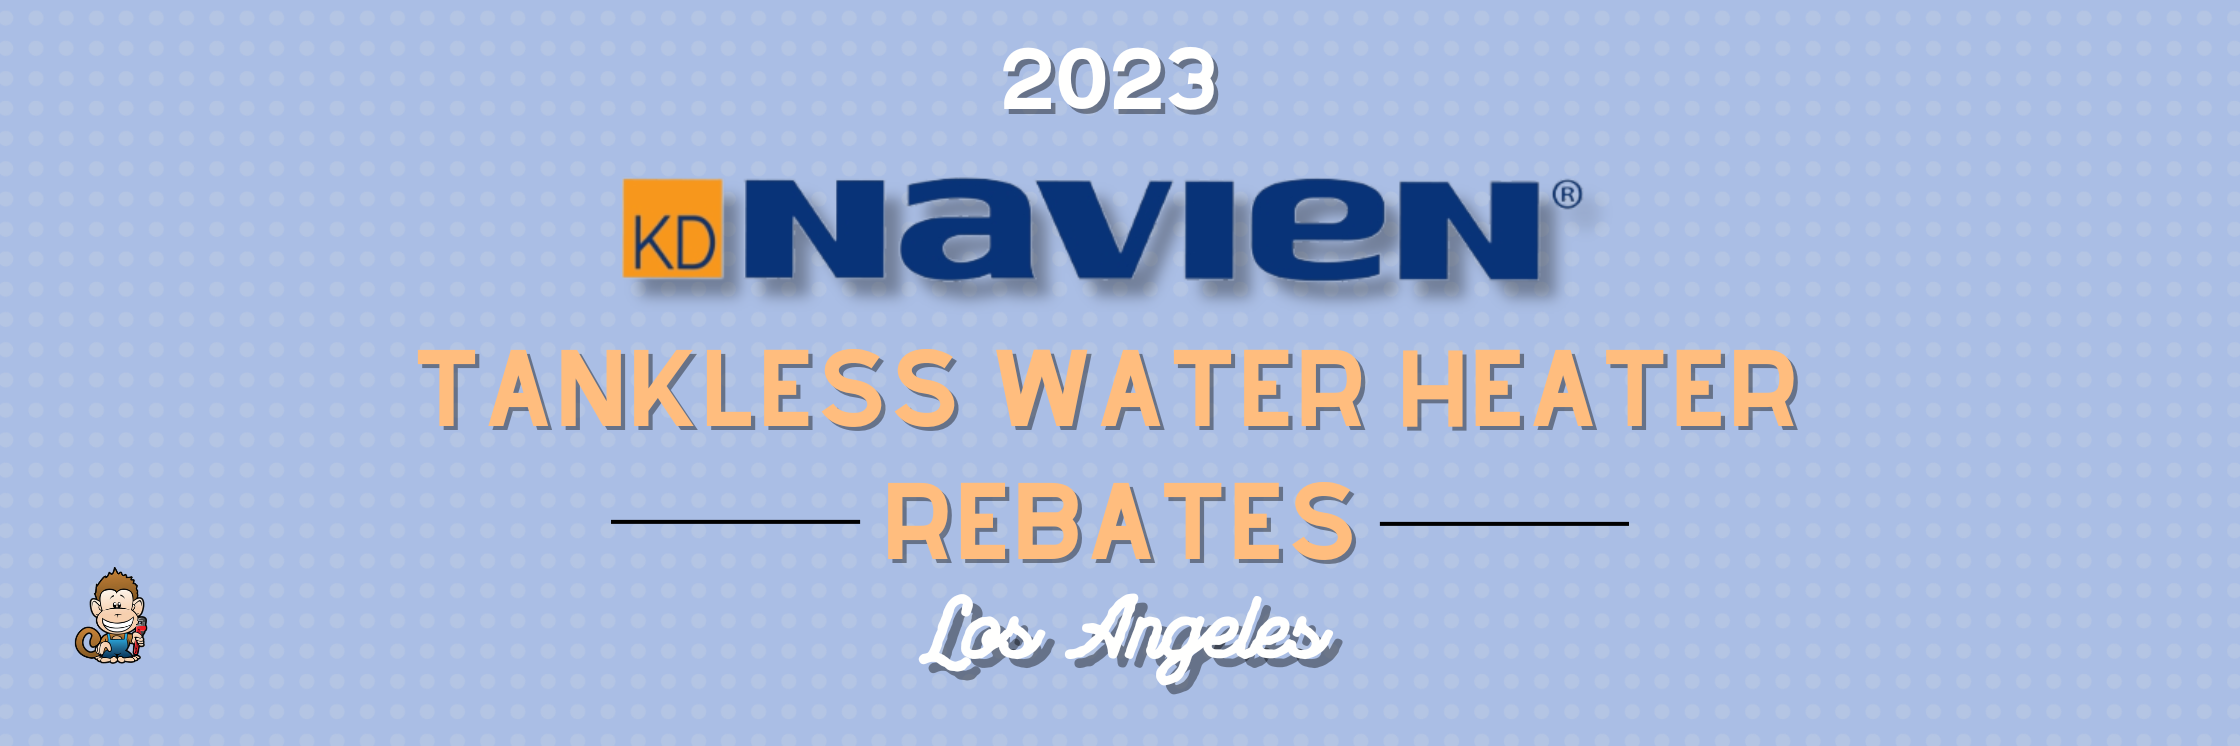 2023 Navien Tankless Water Heater Rebates for Los Angeles